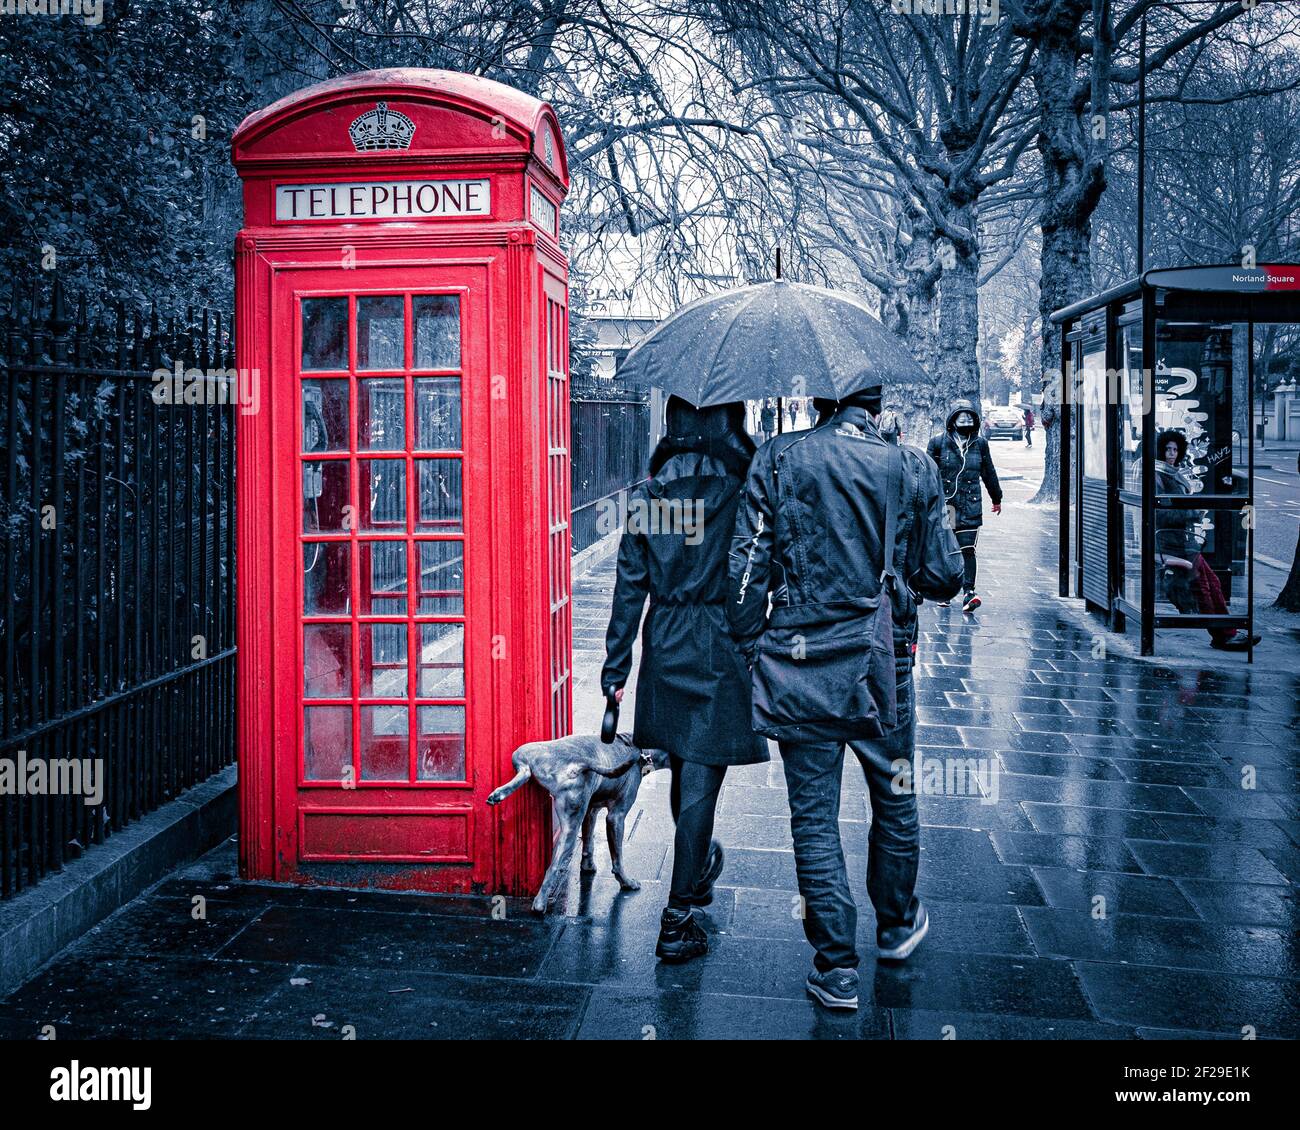 Londra- Marzo 2021: Holland Road a West London e una coppia che cammina un cane che sta cocking la gamba contro una cabina telefonica rossa. Foto Stock